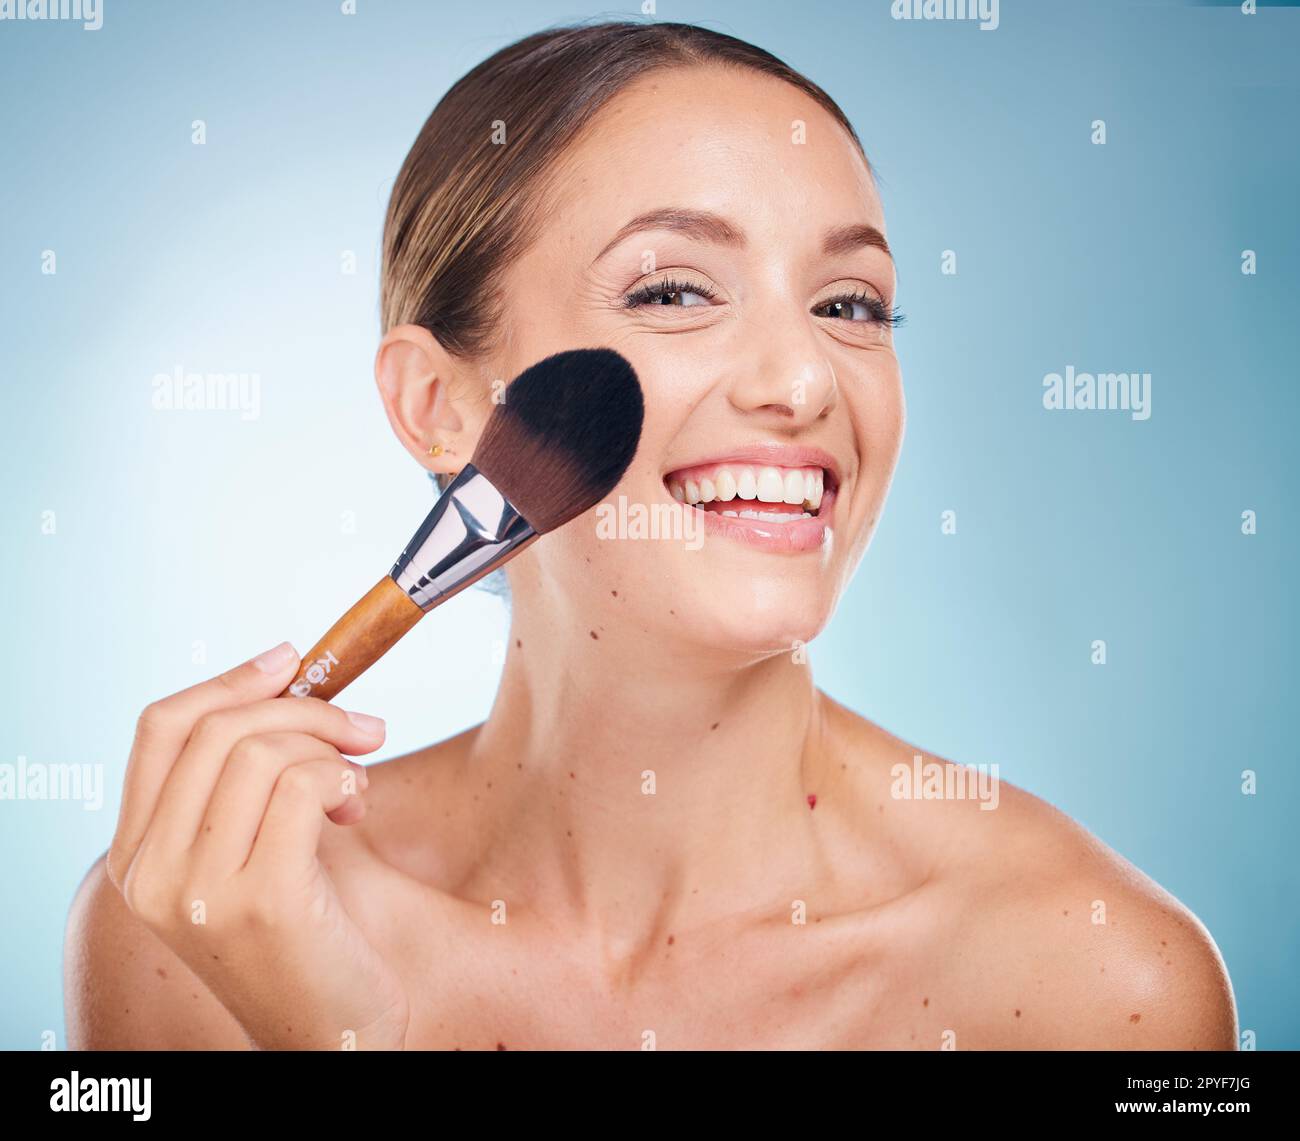 Gesichtsbild, Hautpflege und Frau mit Make-up-Bürste im Studio isoliert auf blauem Hintergrund. Produkt, Kosmetikwerkzeug und Ästhetik eines glücklichen weiblichen Modells mit Accessoire, um die Grundlage für Schönheit zu schaffen Stockfoto